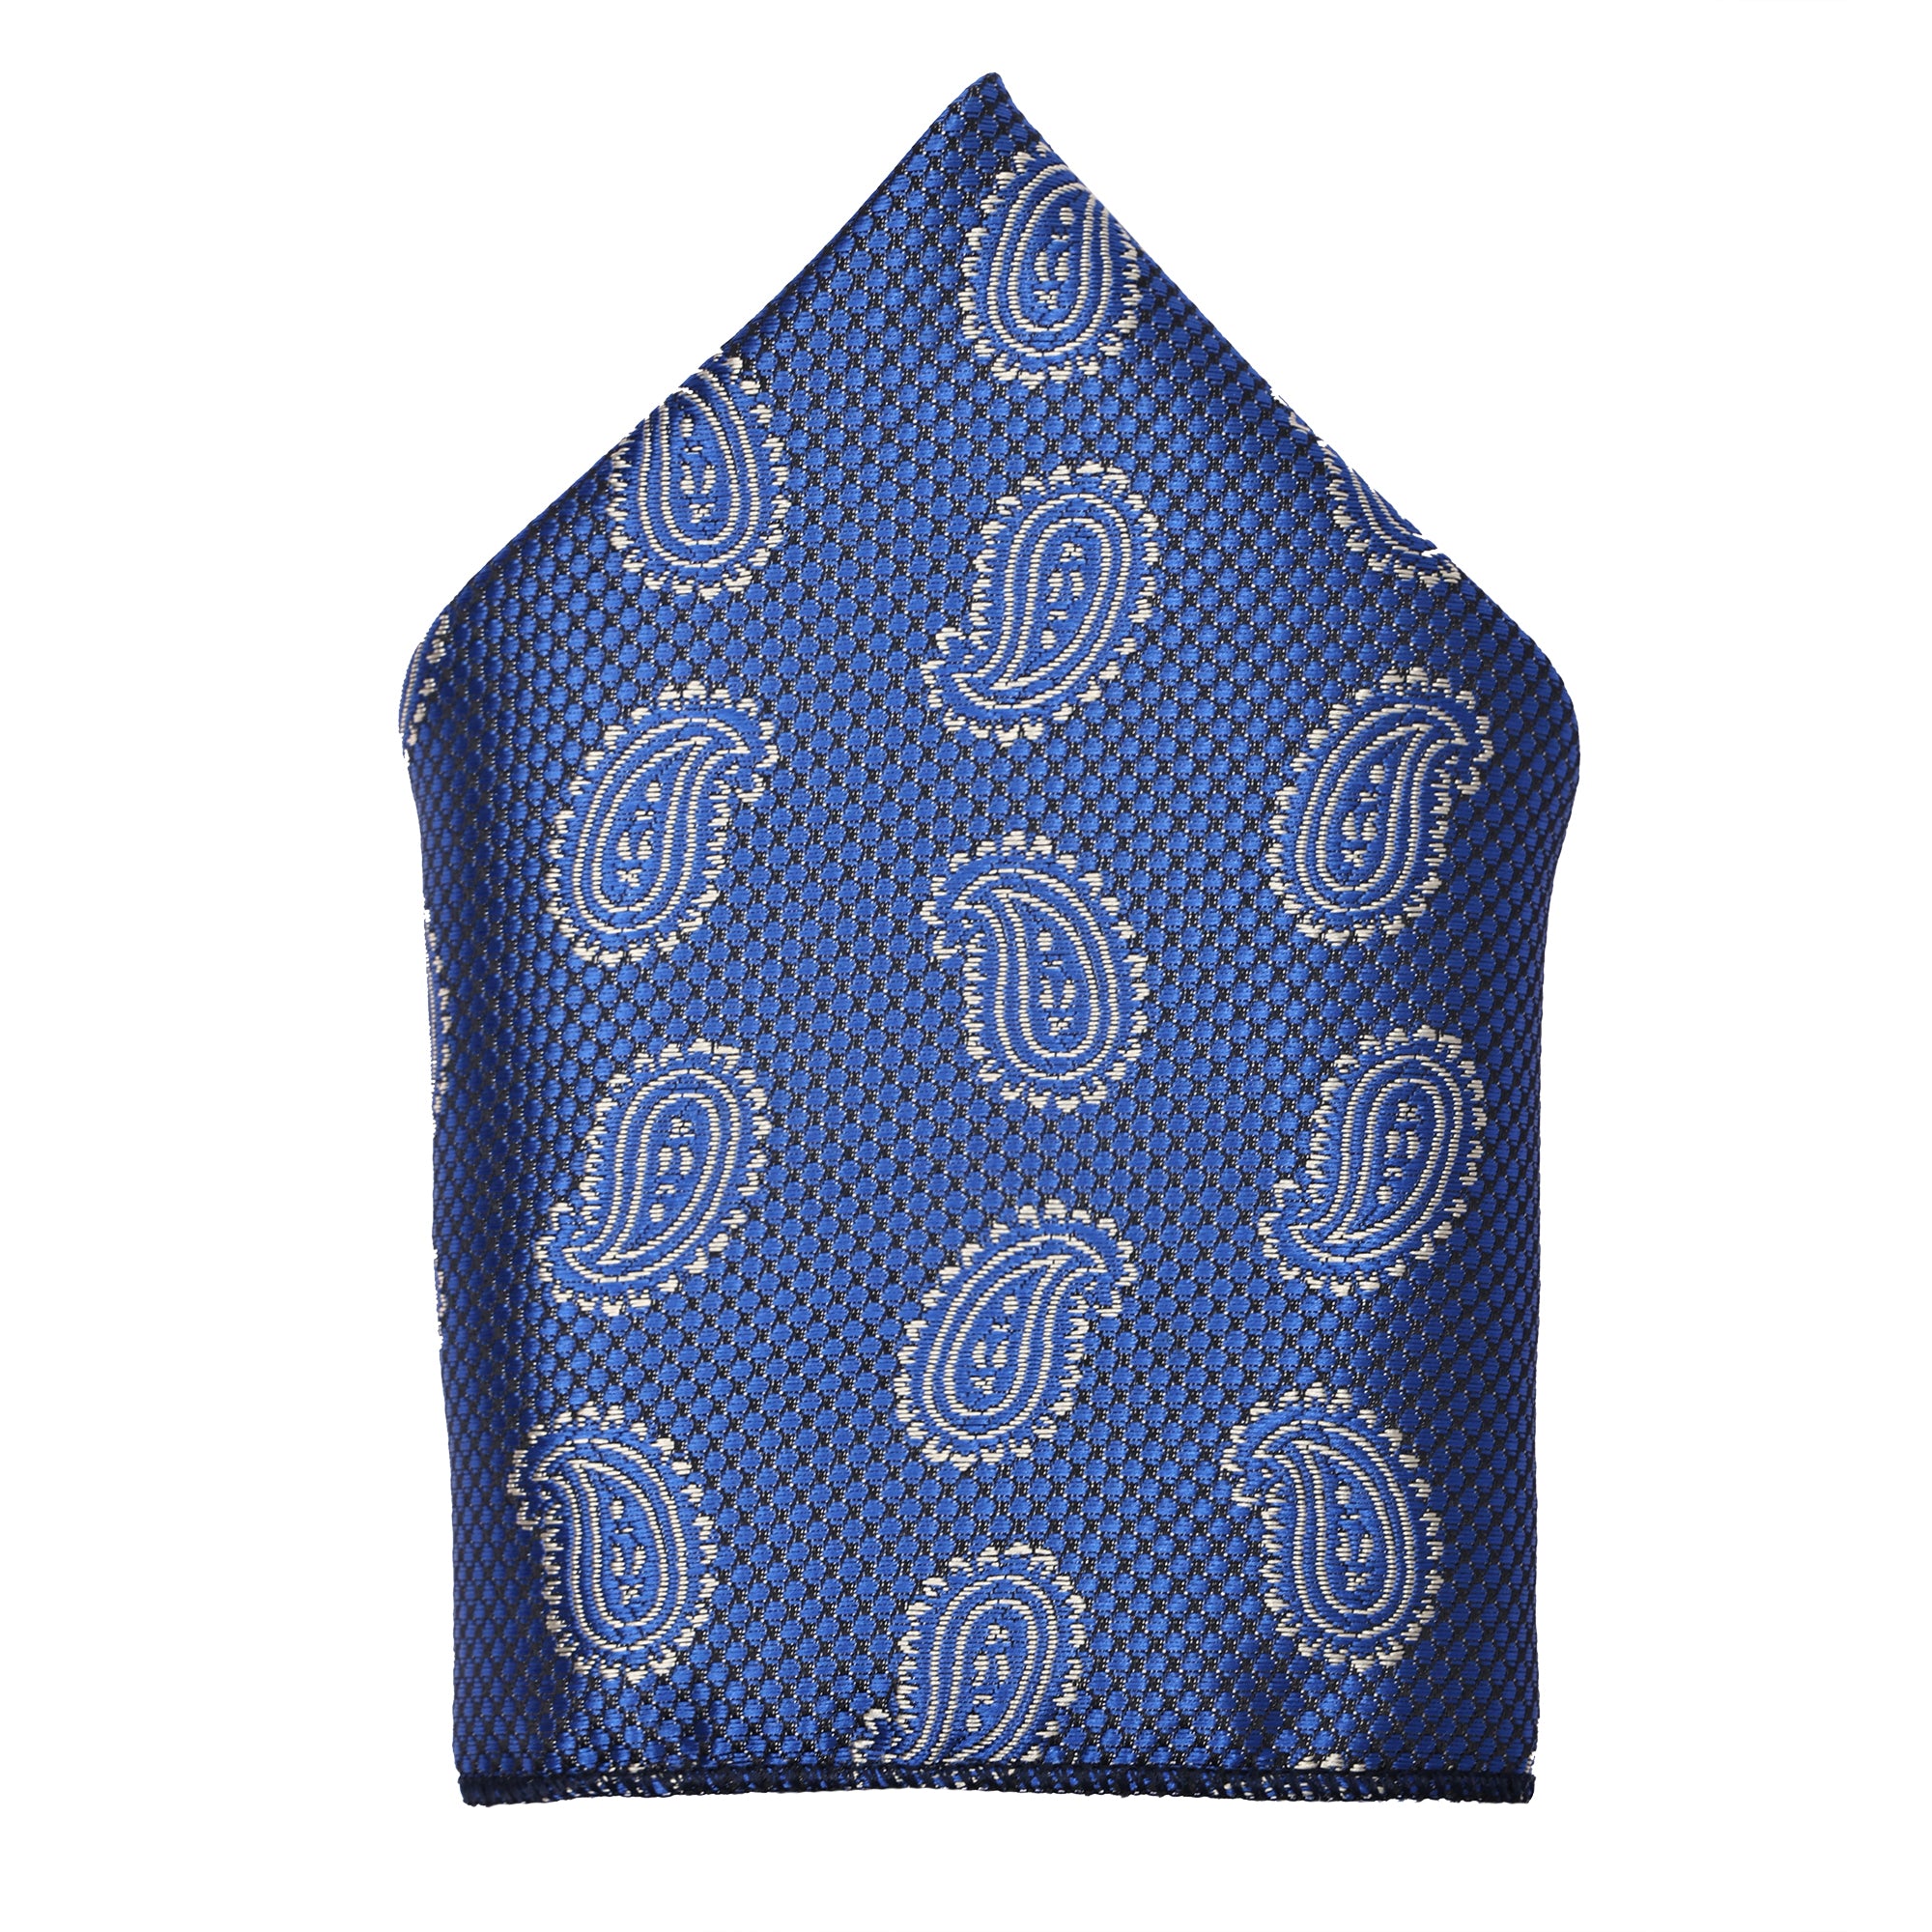 Marine Blue Italian Silk Neckties Set Pocket Square Silver Tiepin Cufflinks & Brooch